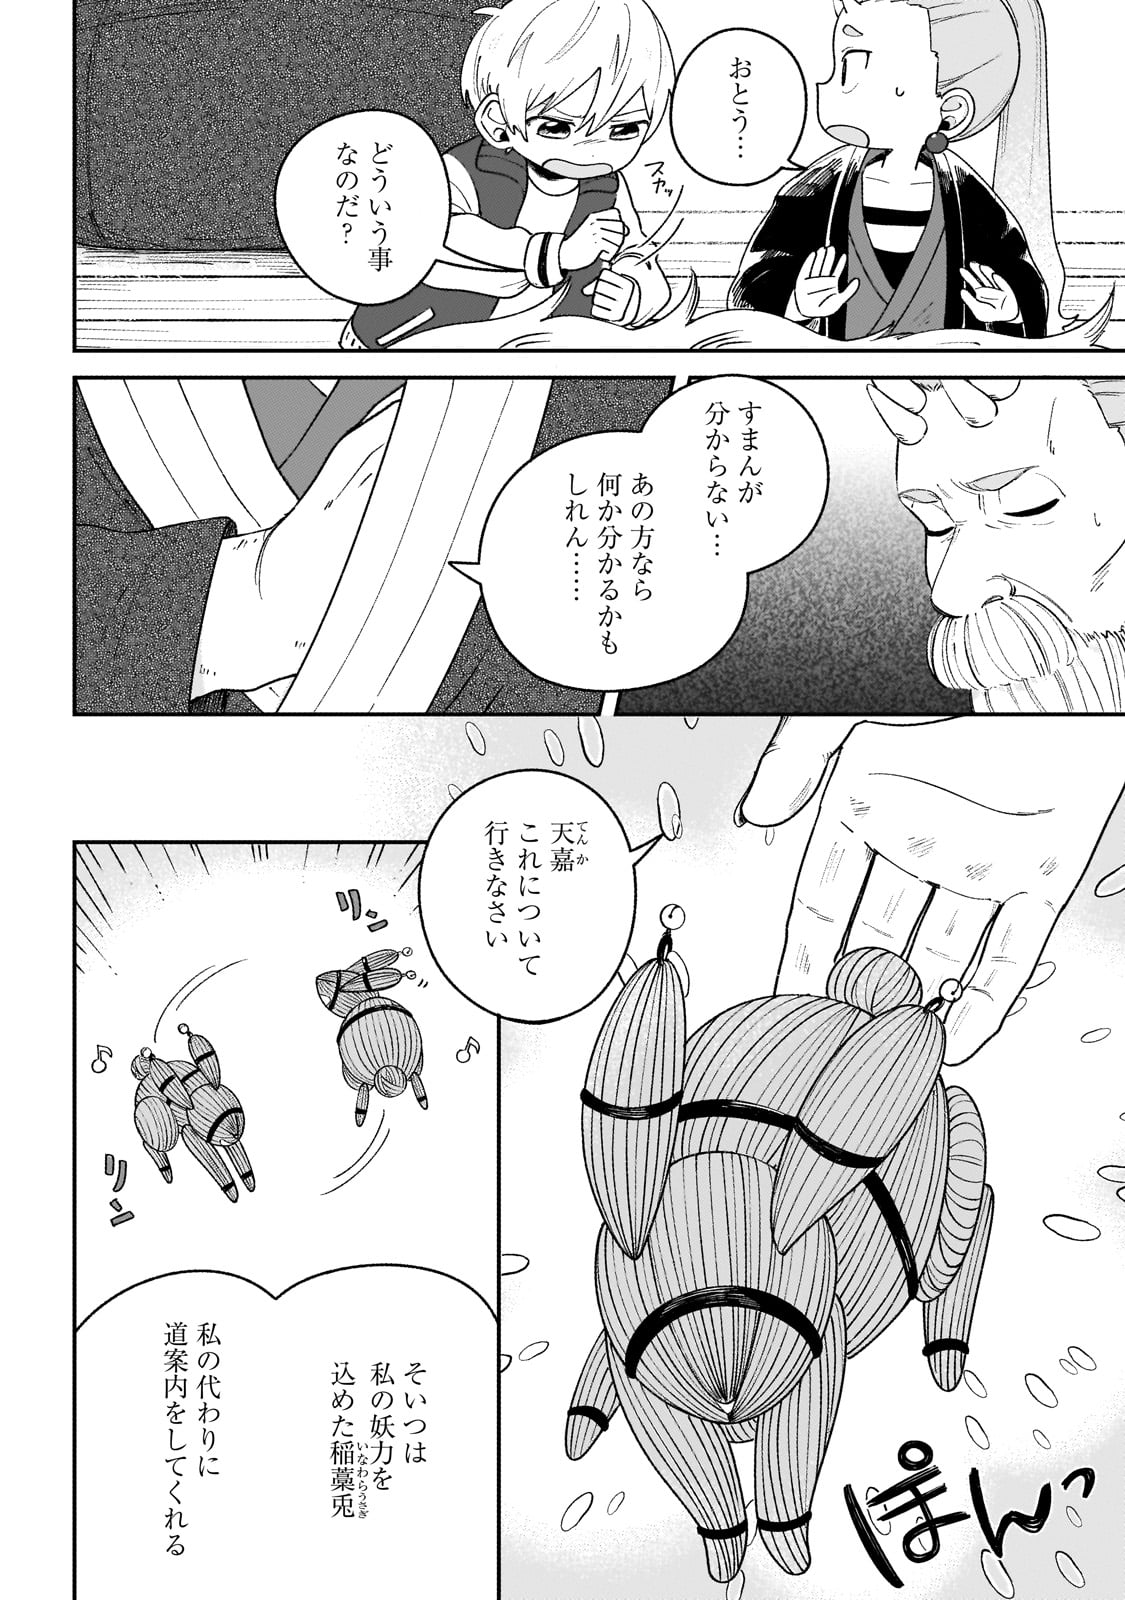 Boku to Ayakashi no 365 Nichi - Chapter 5 - Page 2